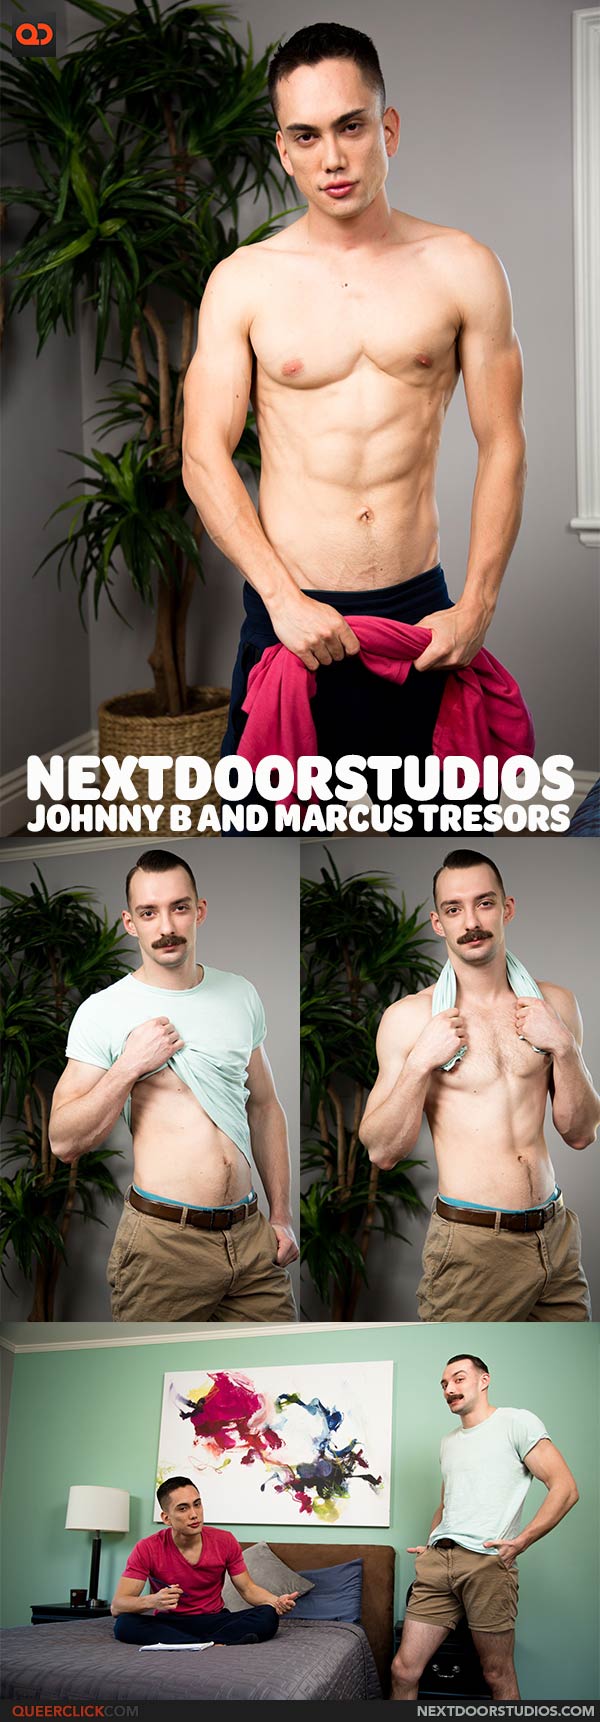 Next Door Studios:  Johnny B and Marcus Tresors